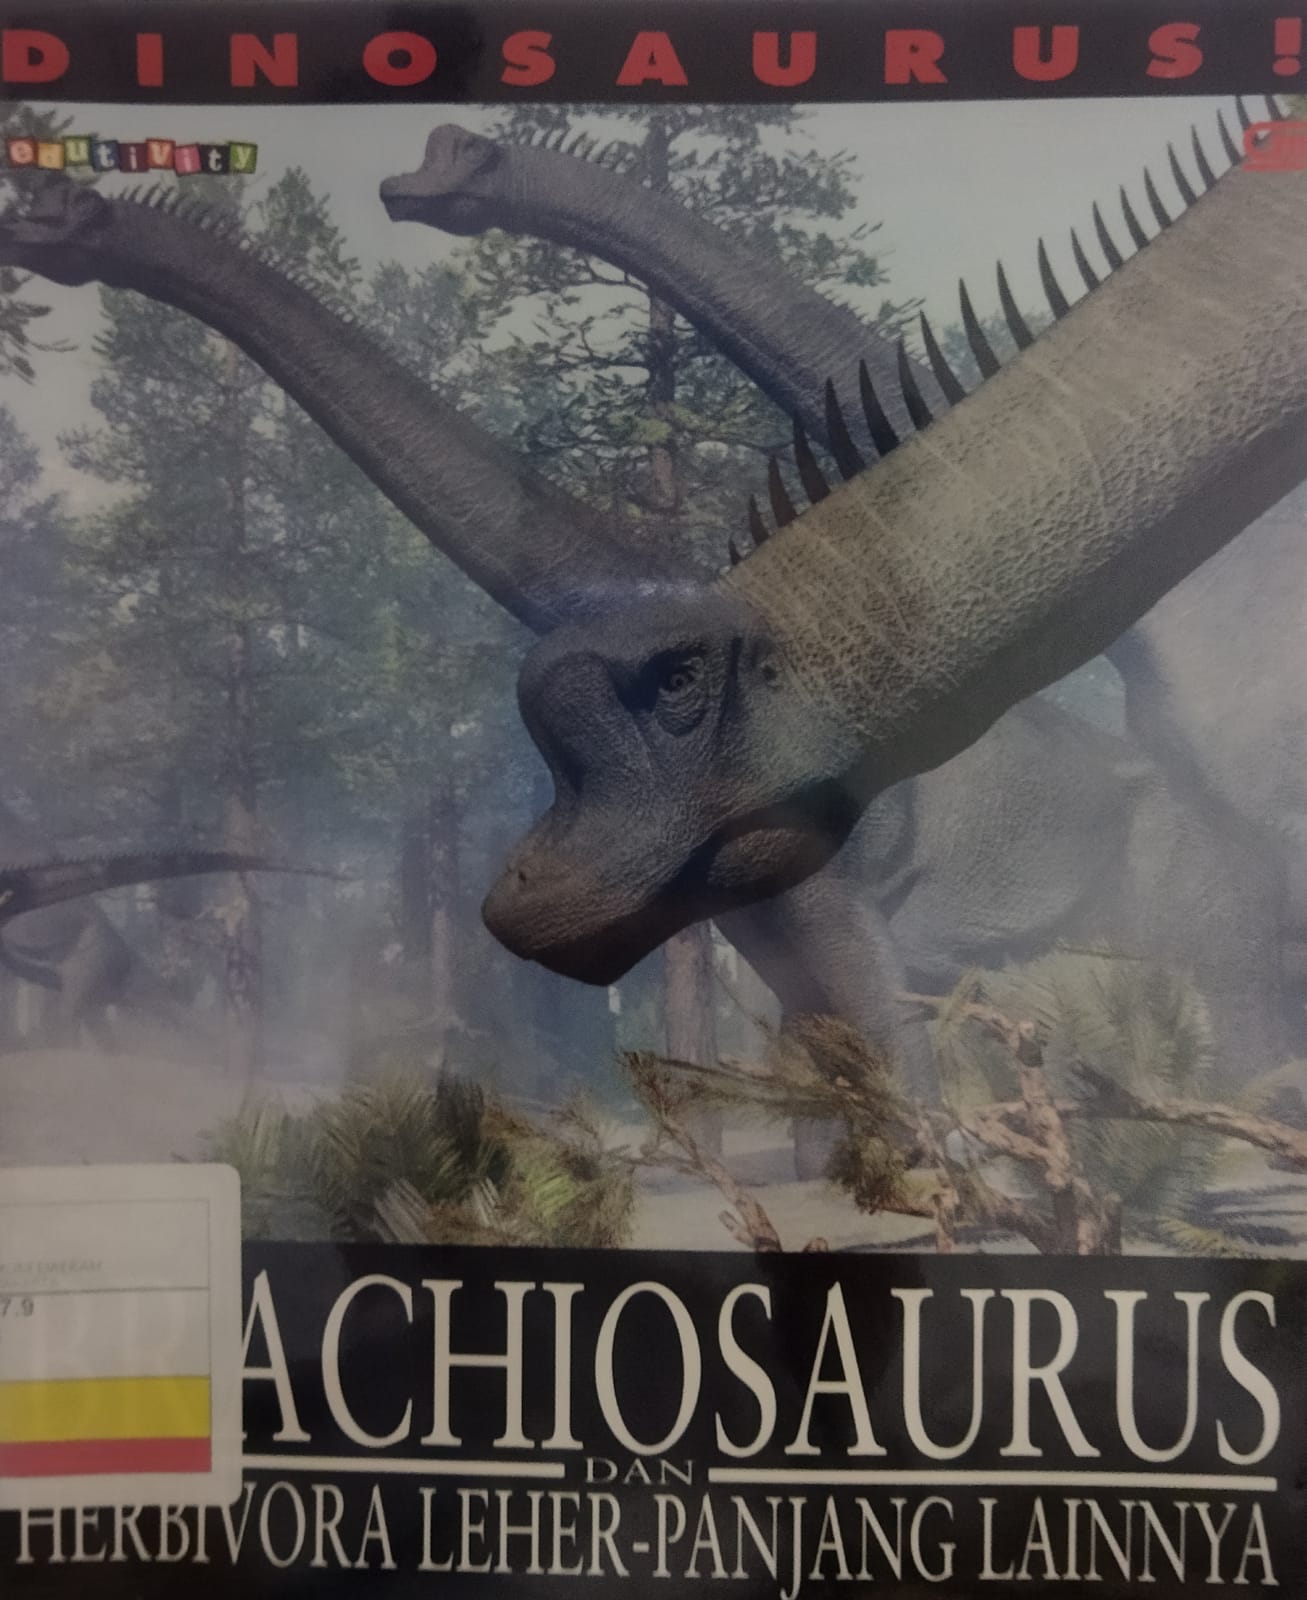 DINOSAURUS! Brachiosaurus and Other Long-Necked Herbivores = :  Dinosaurus! Brachiosaurus dab Herbivora Leher Panjang lainnya ; penerjemah : Rosi L Simamora